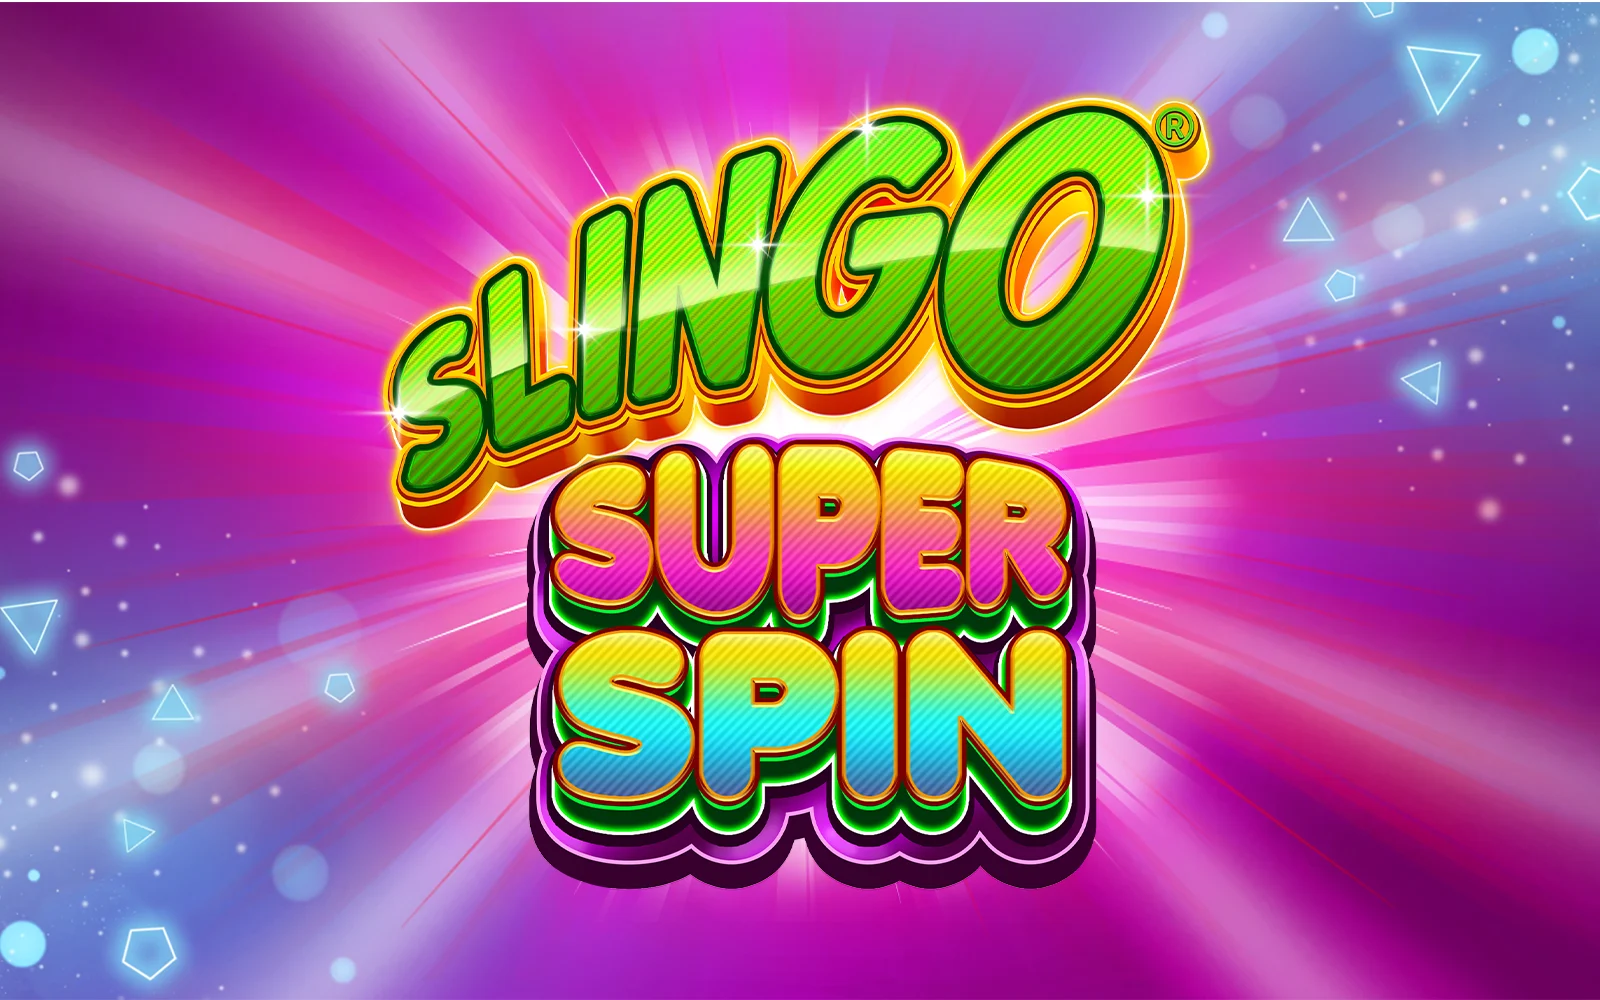 Zagraj w Slingo Super Spin w kasynie online Starcasino.be